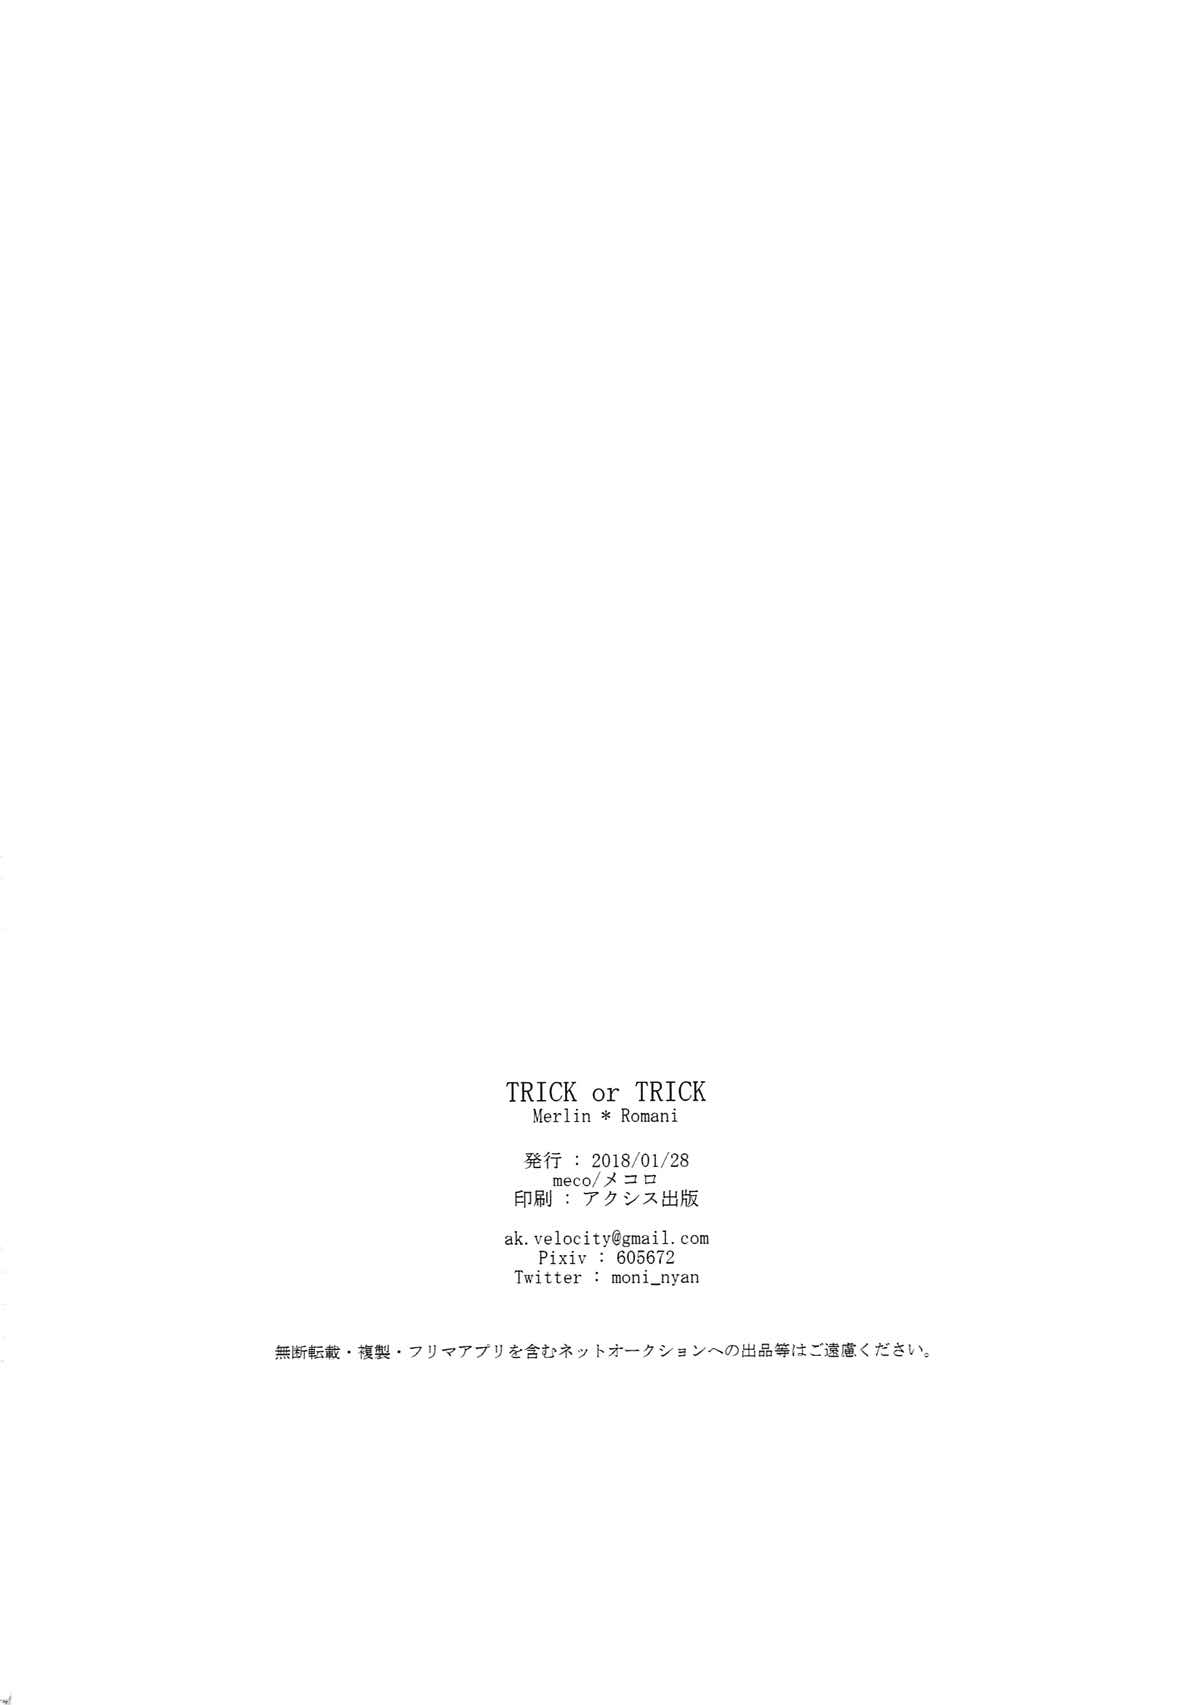 (第11次ROOT 4 to 5) [メコロ (meco)] TRICK or TRICK (Fate/Grand Order)